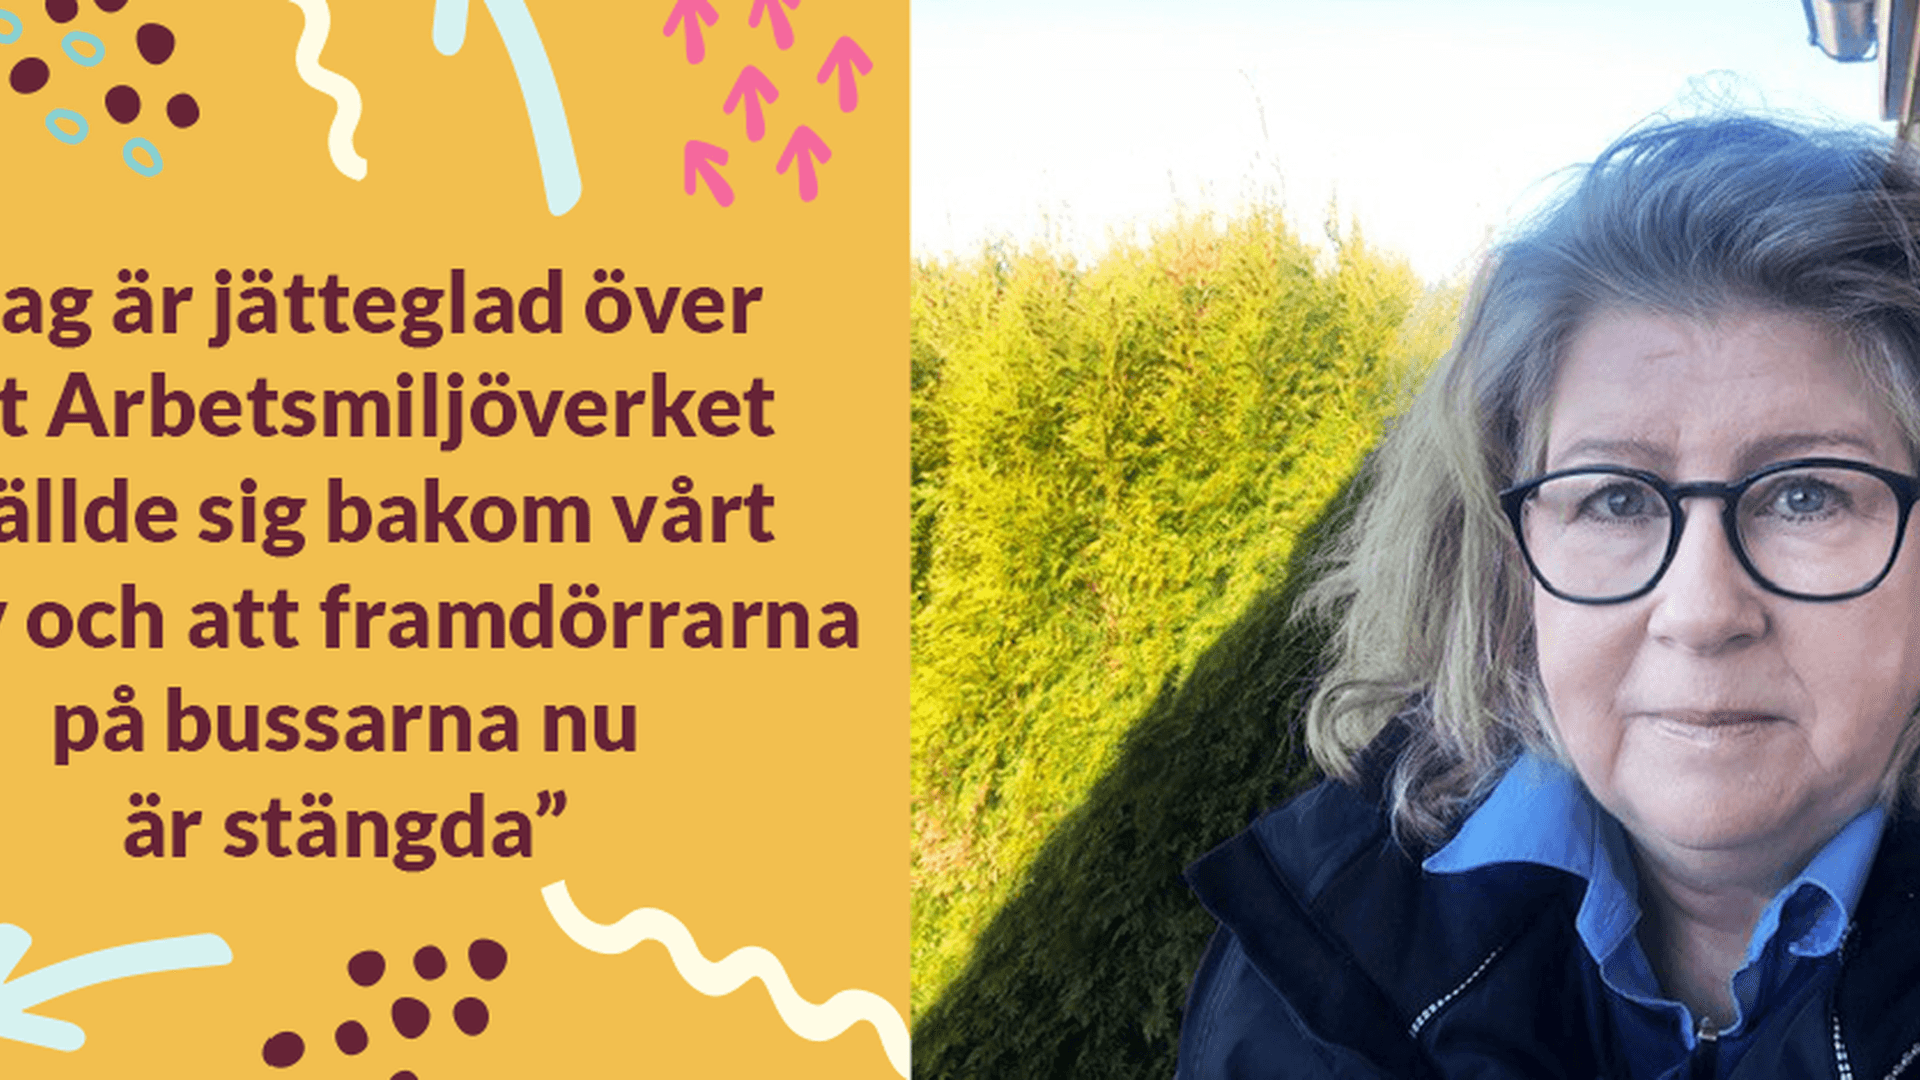 Ulrika Lundström och hennes kollegor är nöjda över att Arbetsmiljöverket följde deras linje och att framdörrarna nu är stängda.